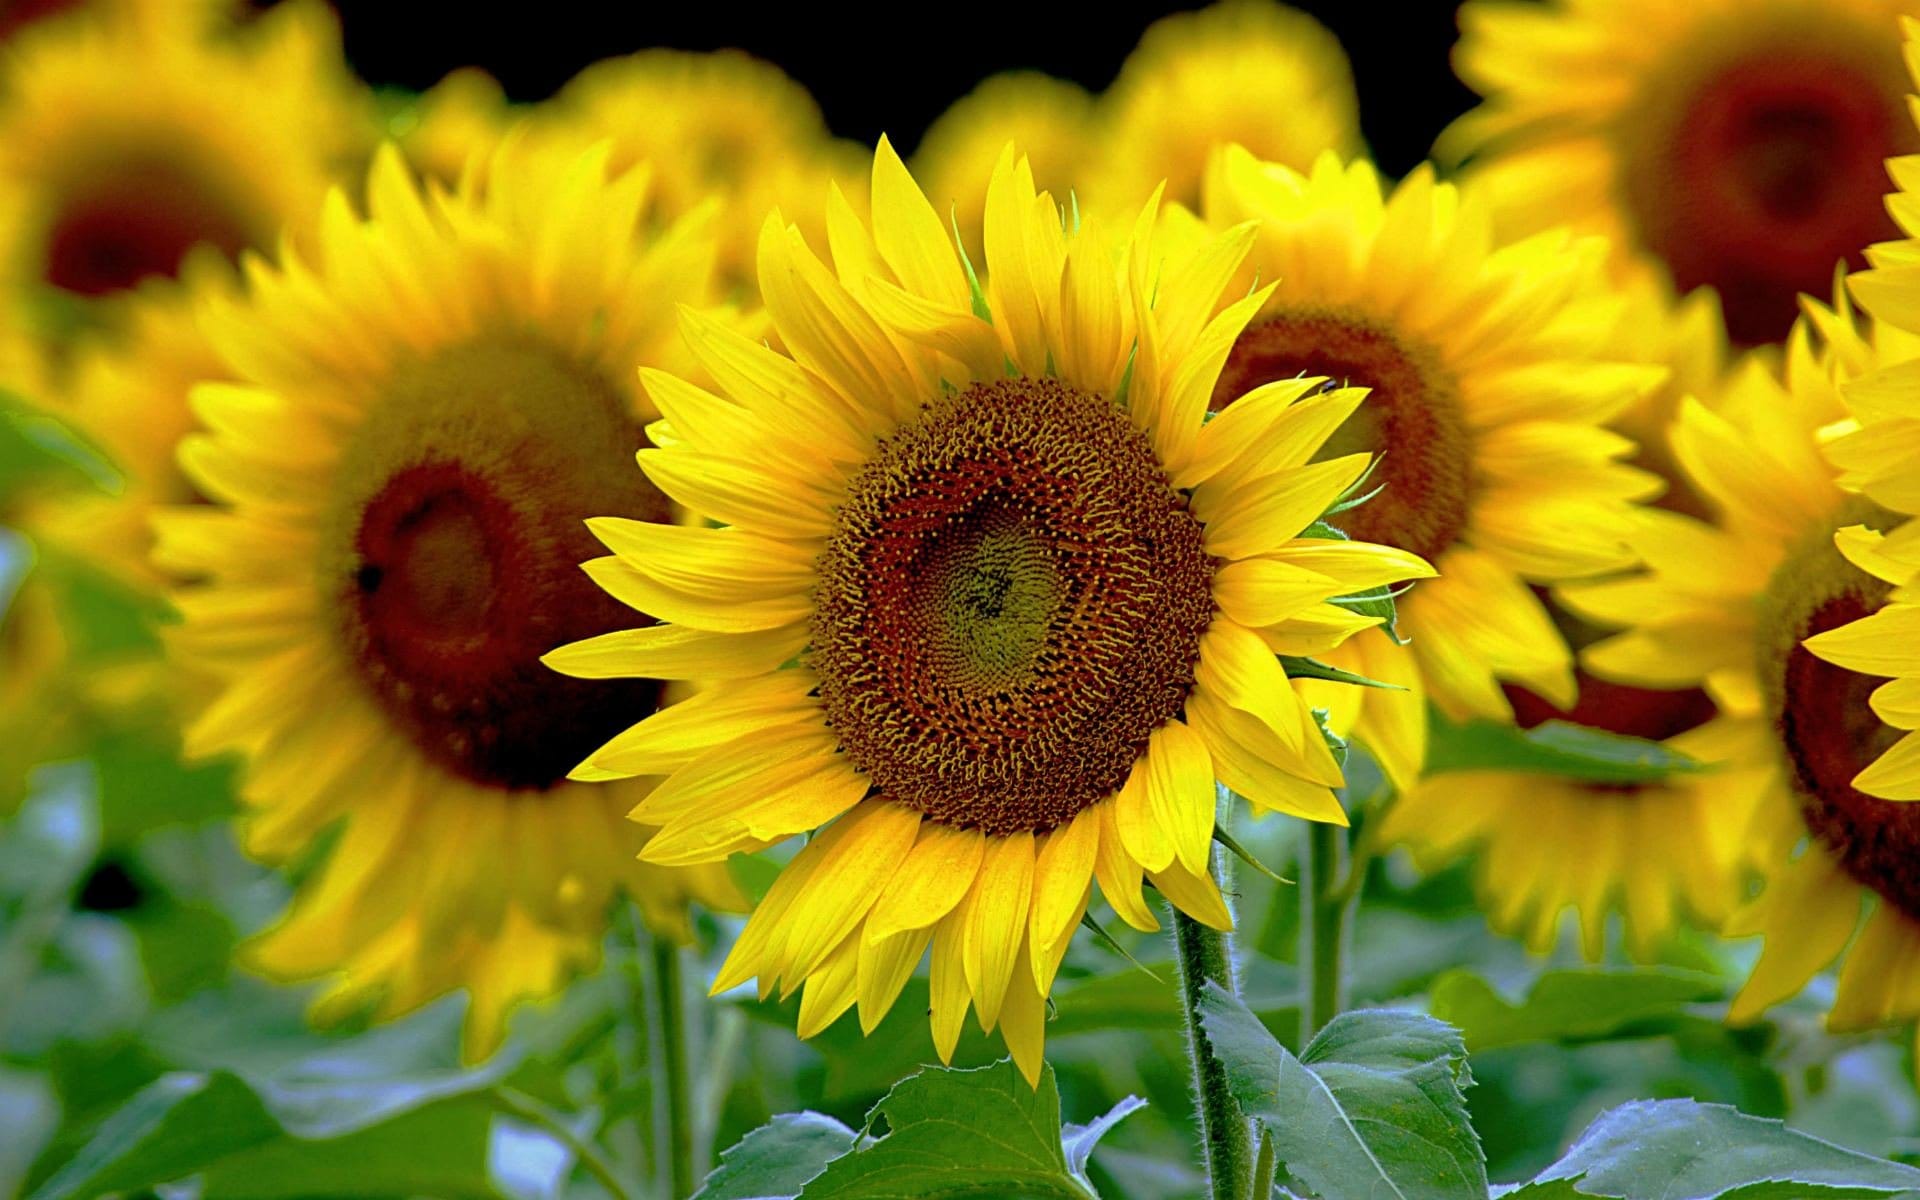 Sunflower background wallpaper - beautiful sun flower